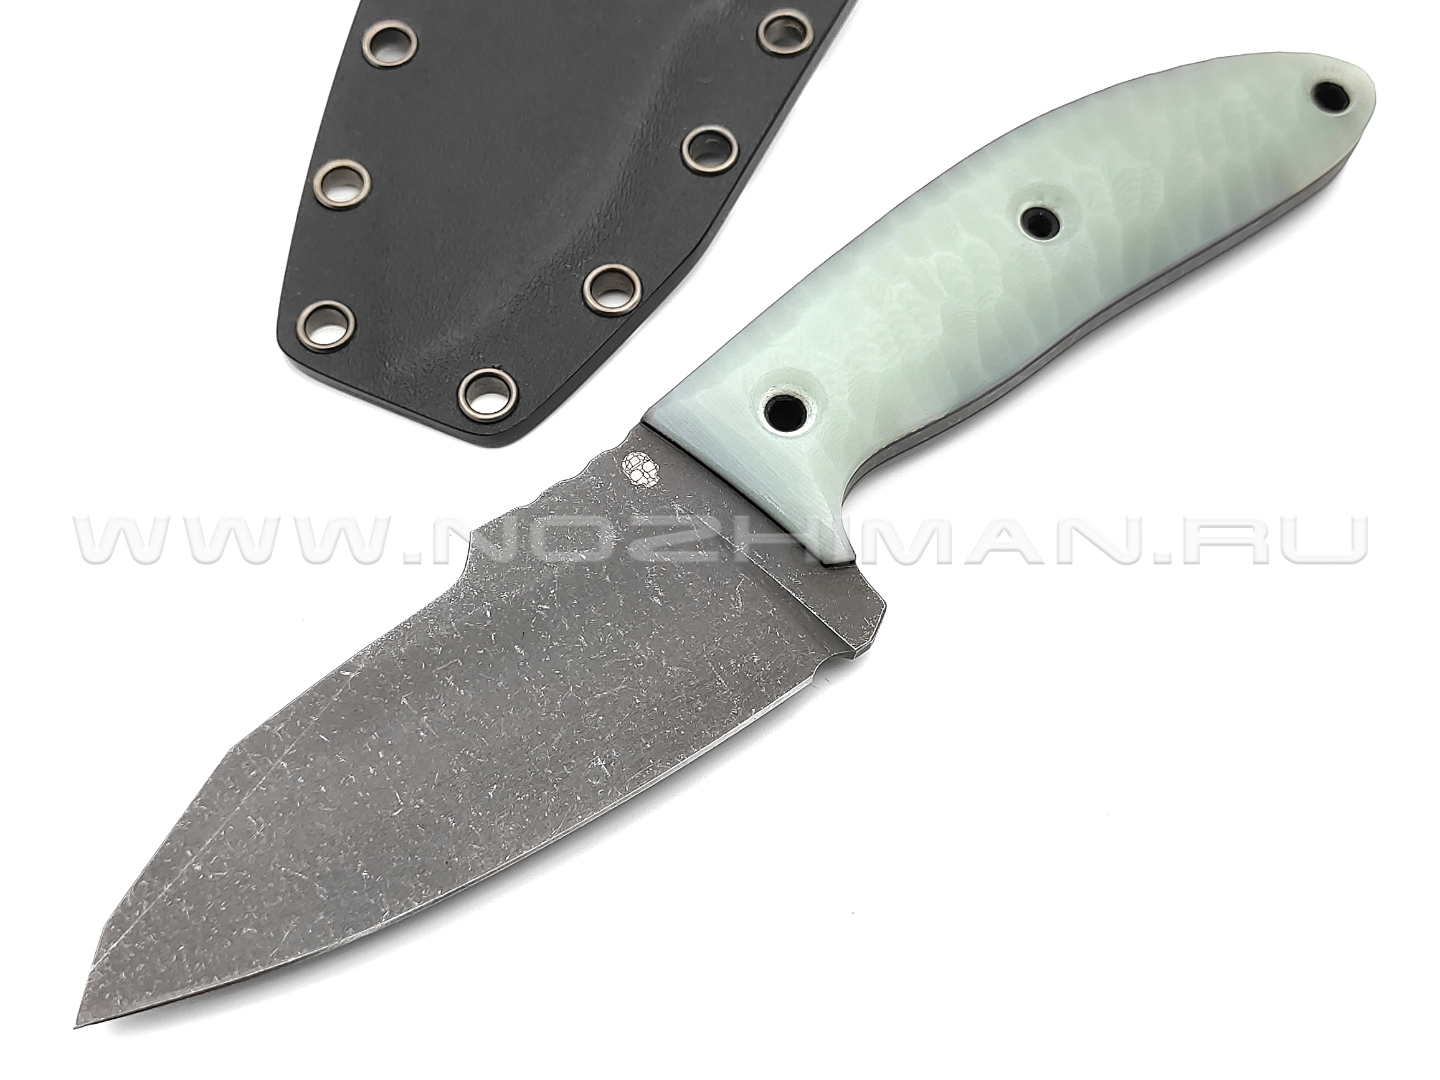 Dyag knives нож Model12_1 сталь N690, рукоять G10 jade